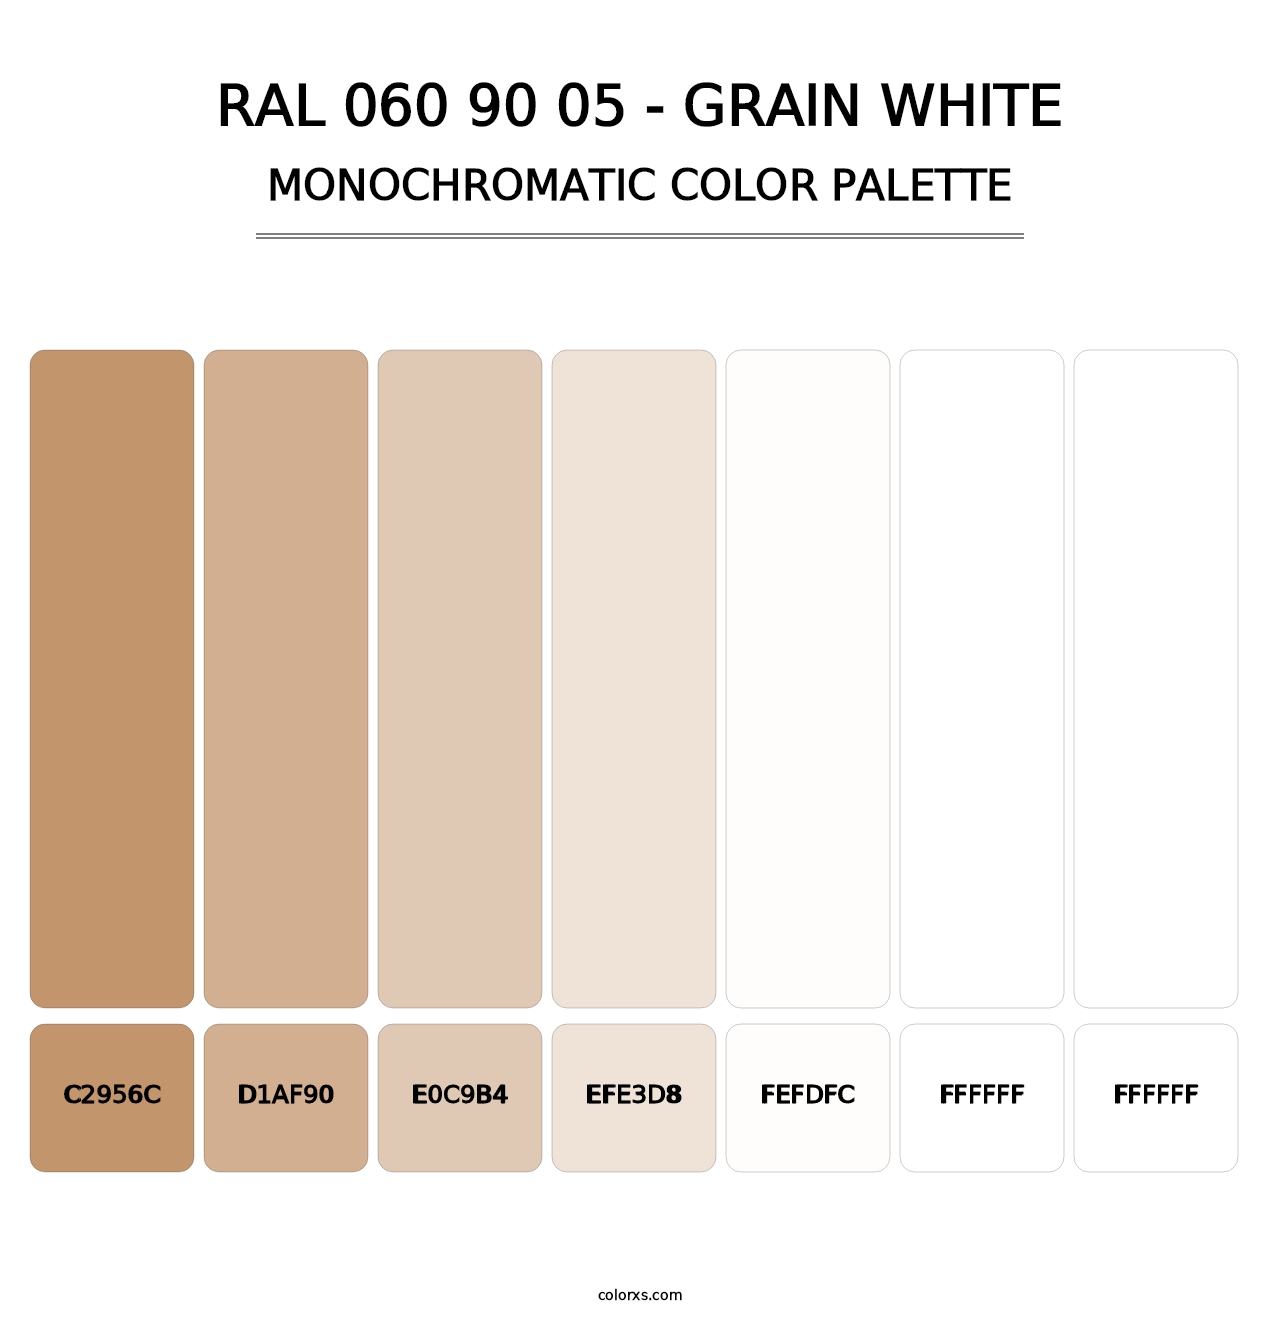 RAL 060 90 05 - Grain White - Monochromatic Color Palette